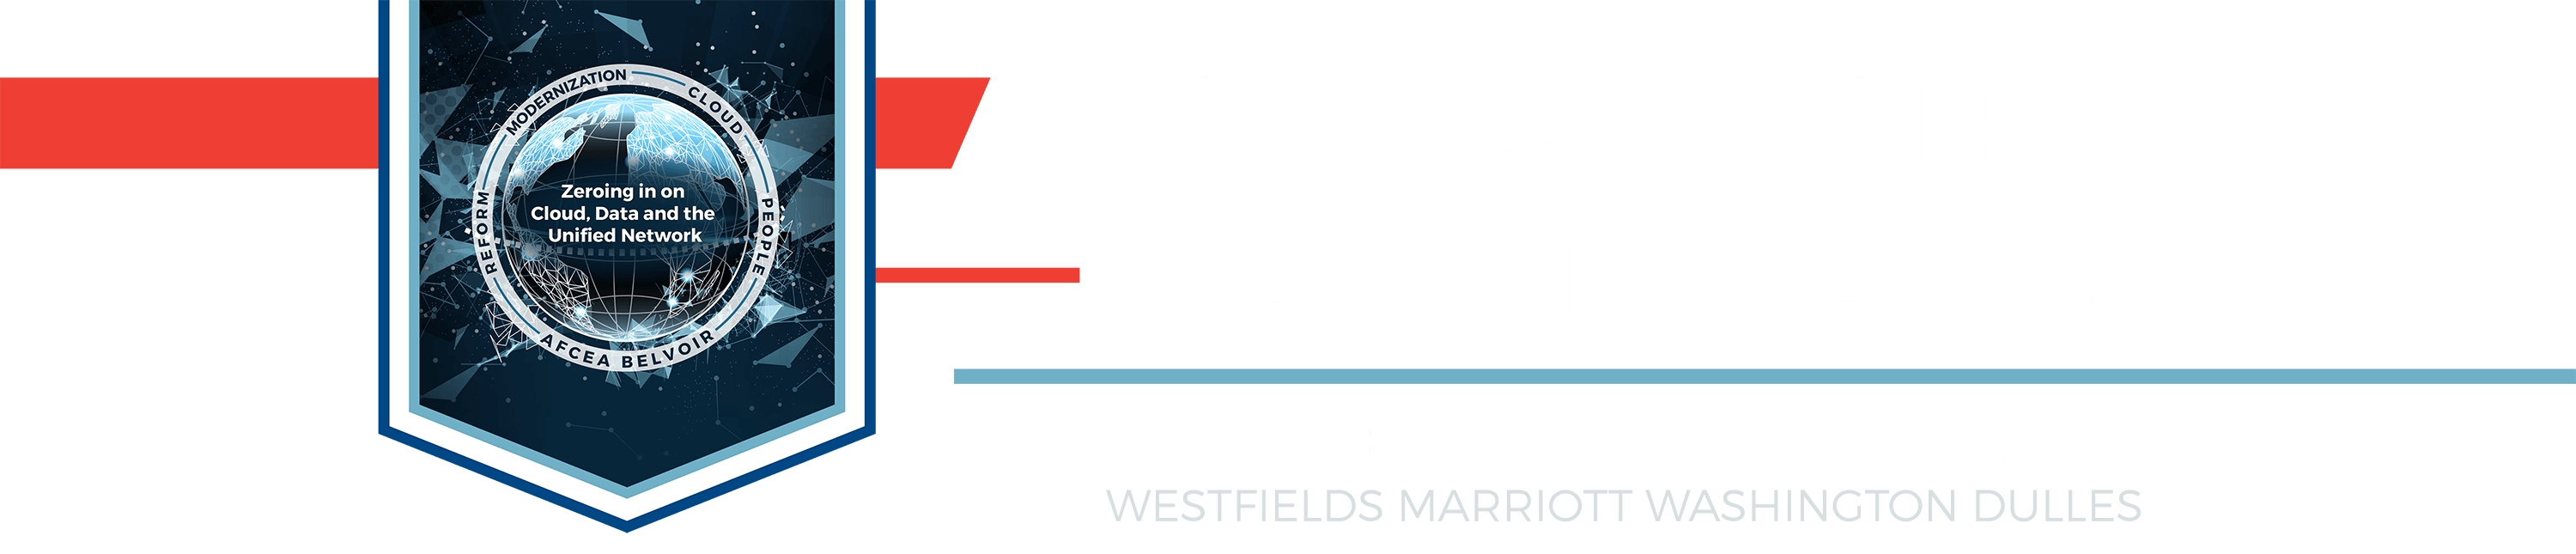 AFCEA Belvoir Industry Days 2022